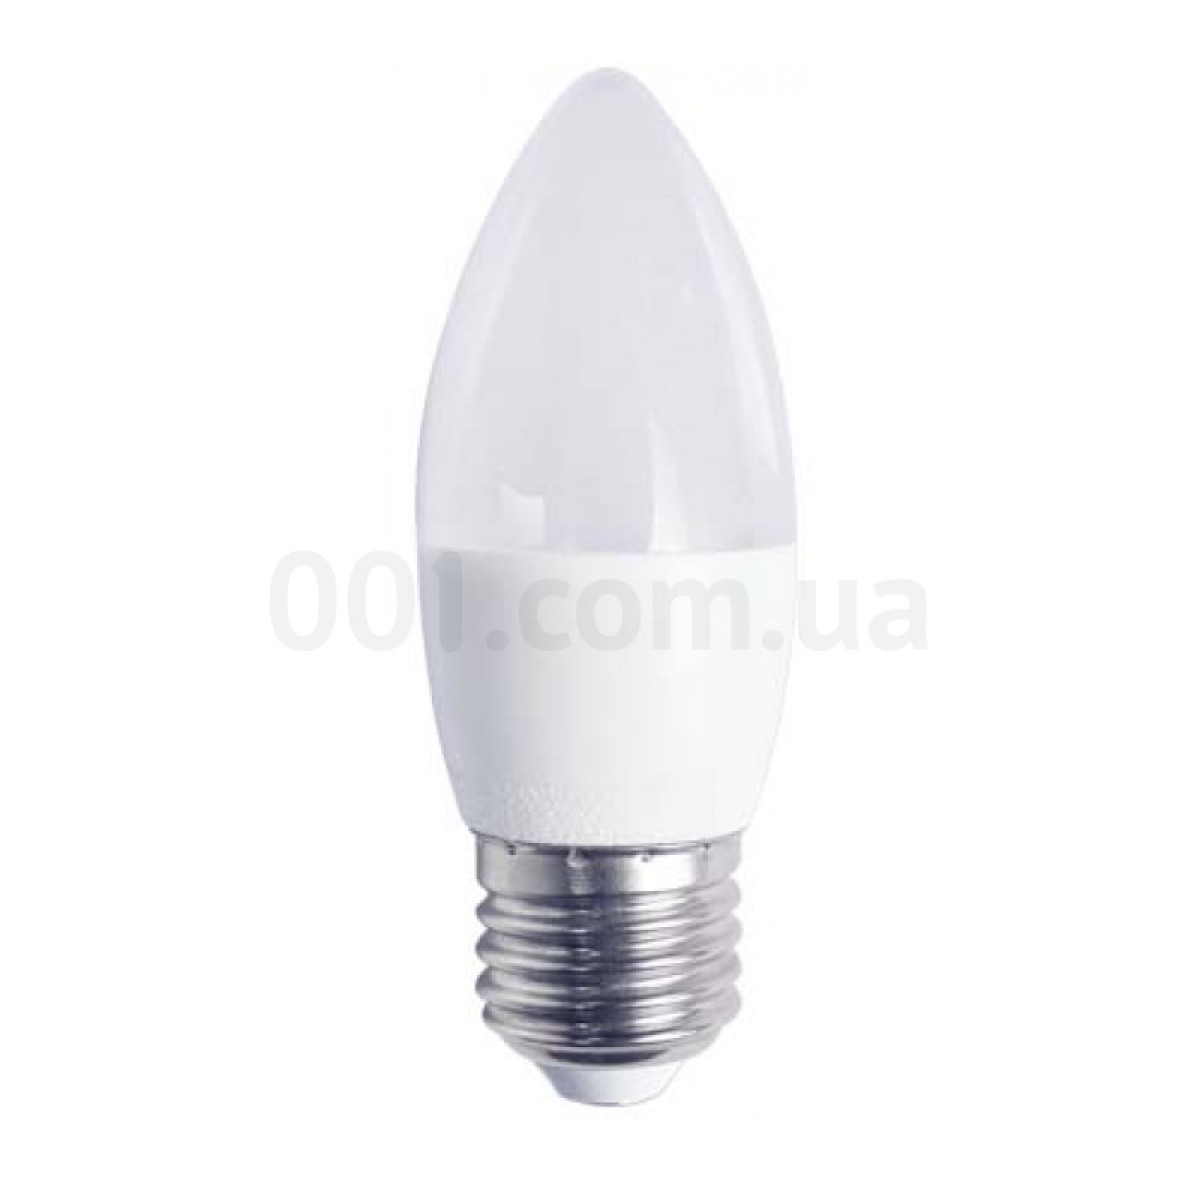 Светодиодная лампа LB-737 C37 (свеча) 6Вт 4000K E27, Feron 256_256.jpg